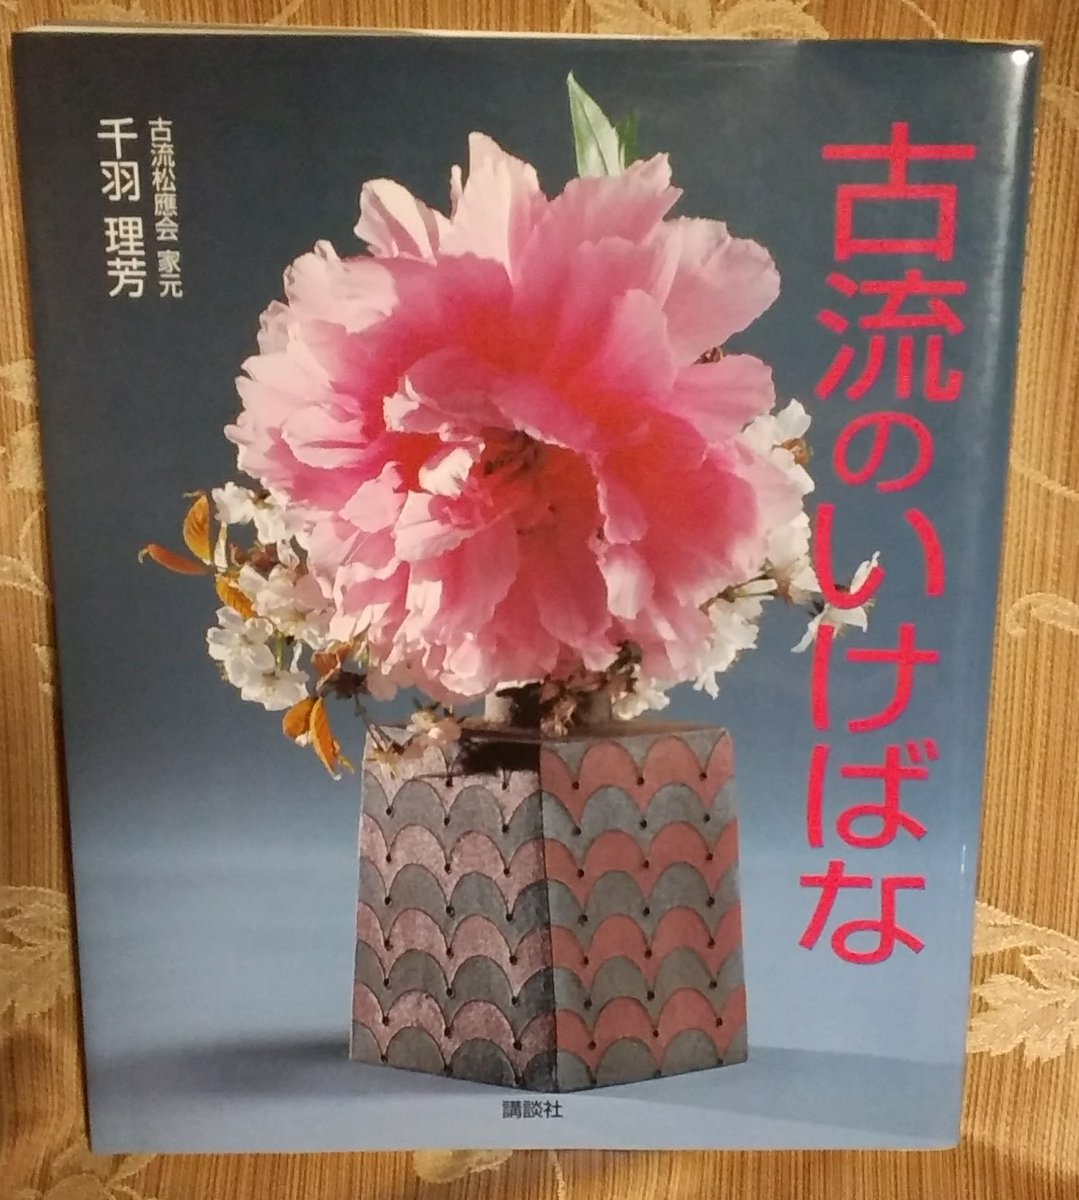 Rikatsu 自分の持っている生け花の本を調べてみたら 確かに松應会さんの本にシュロのお生花の生け方が載っていました お生花 で生けるのは葉柄の長い和棕櫚を使うと書かれていました